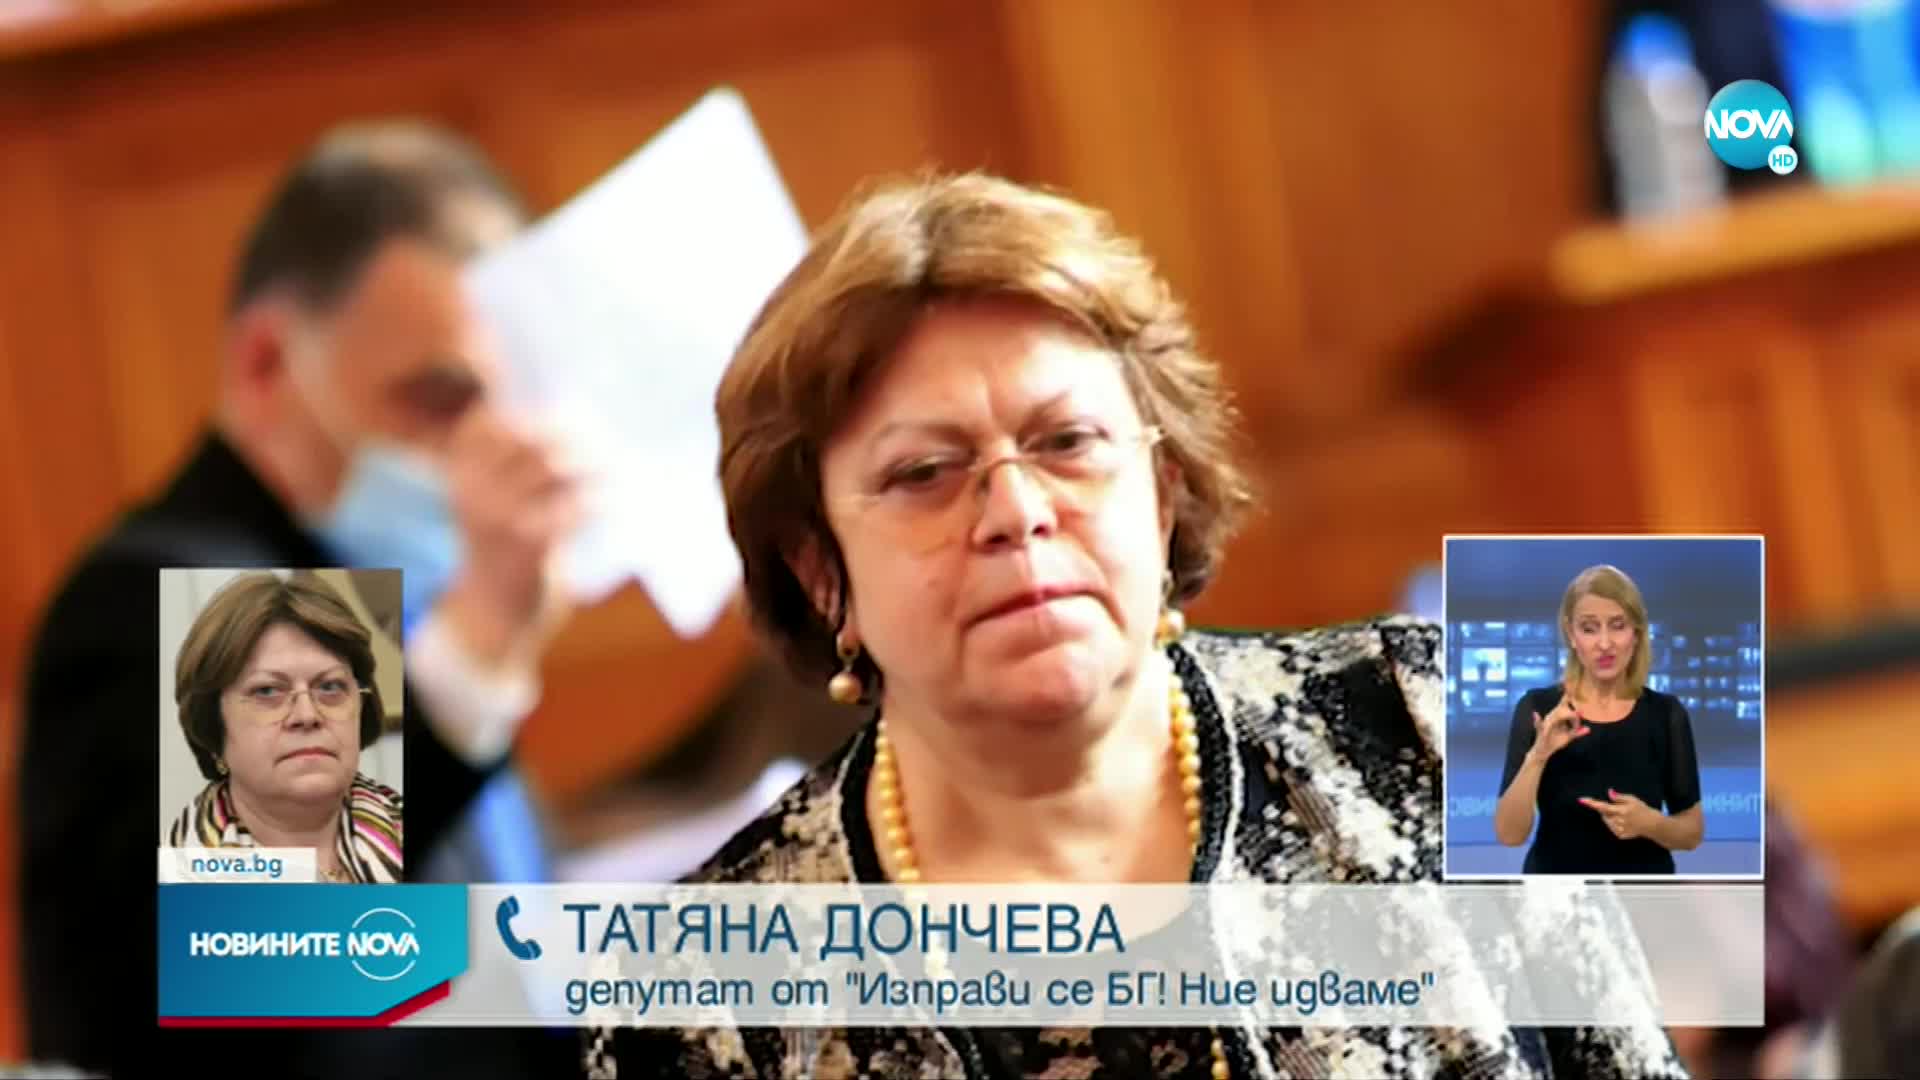 Дончева: Ще търся правата си в съда